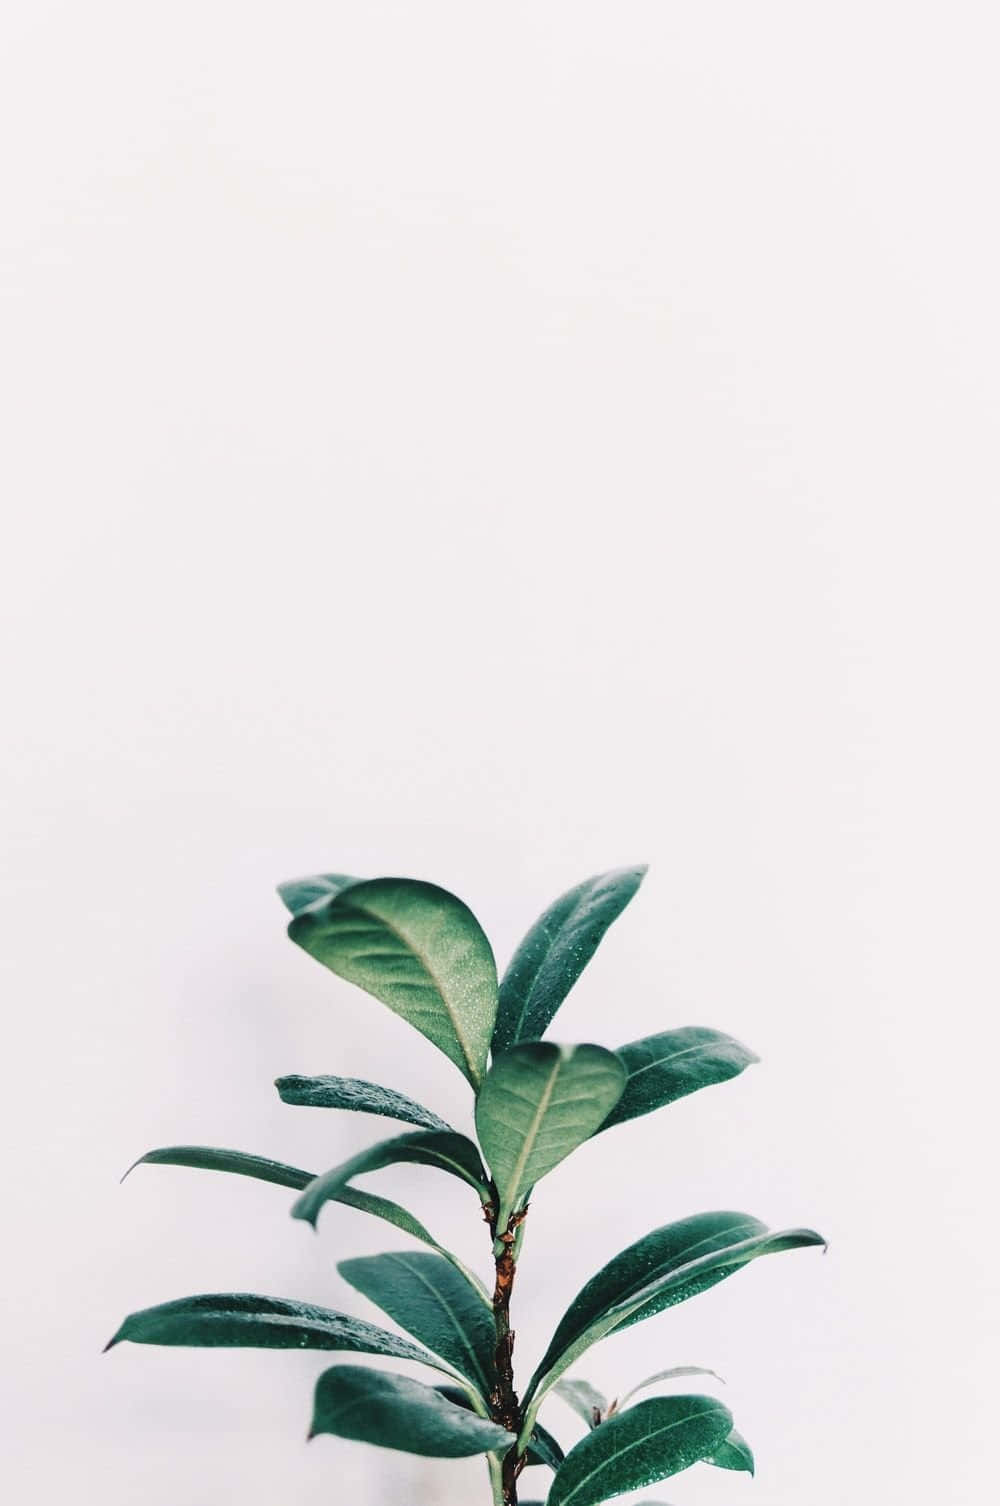 Enmajestätisk Saftig Växt Med En Fantastisk Estetisk. Wallpaper